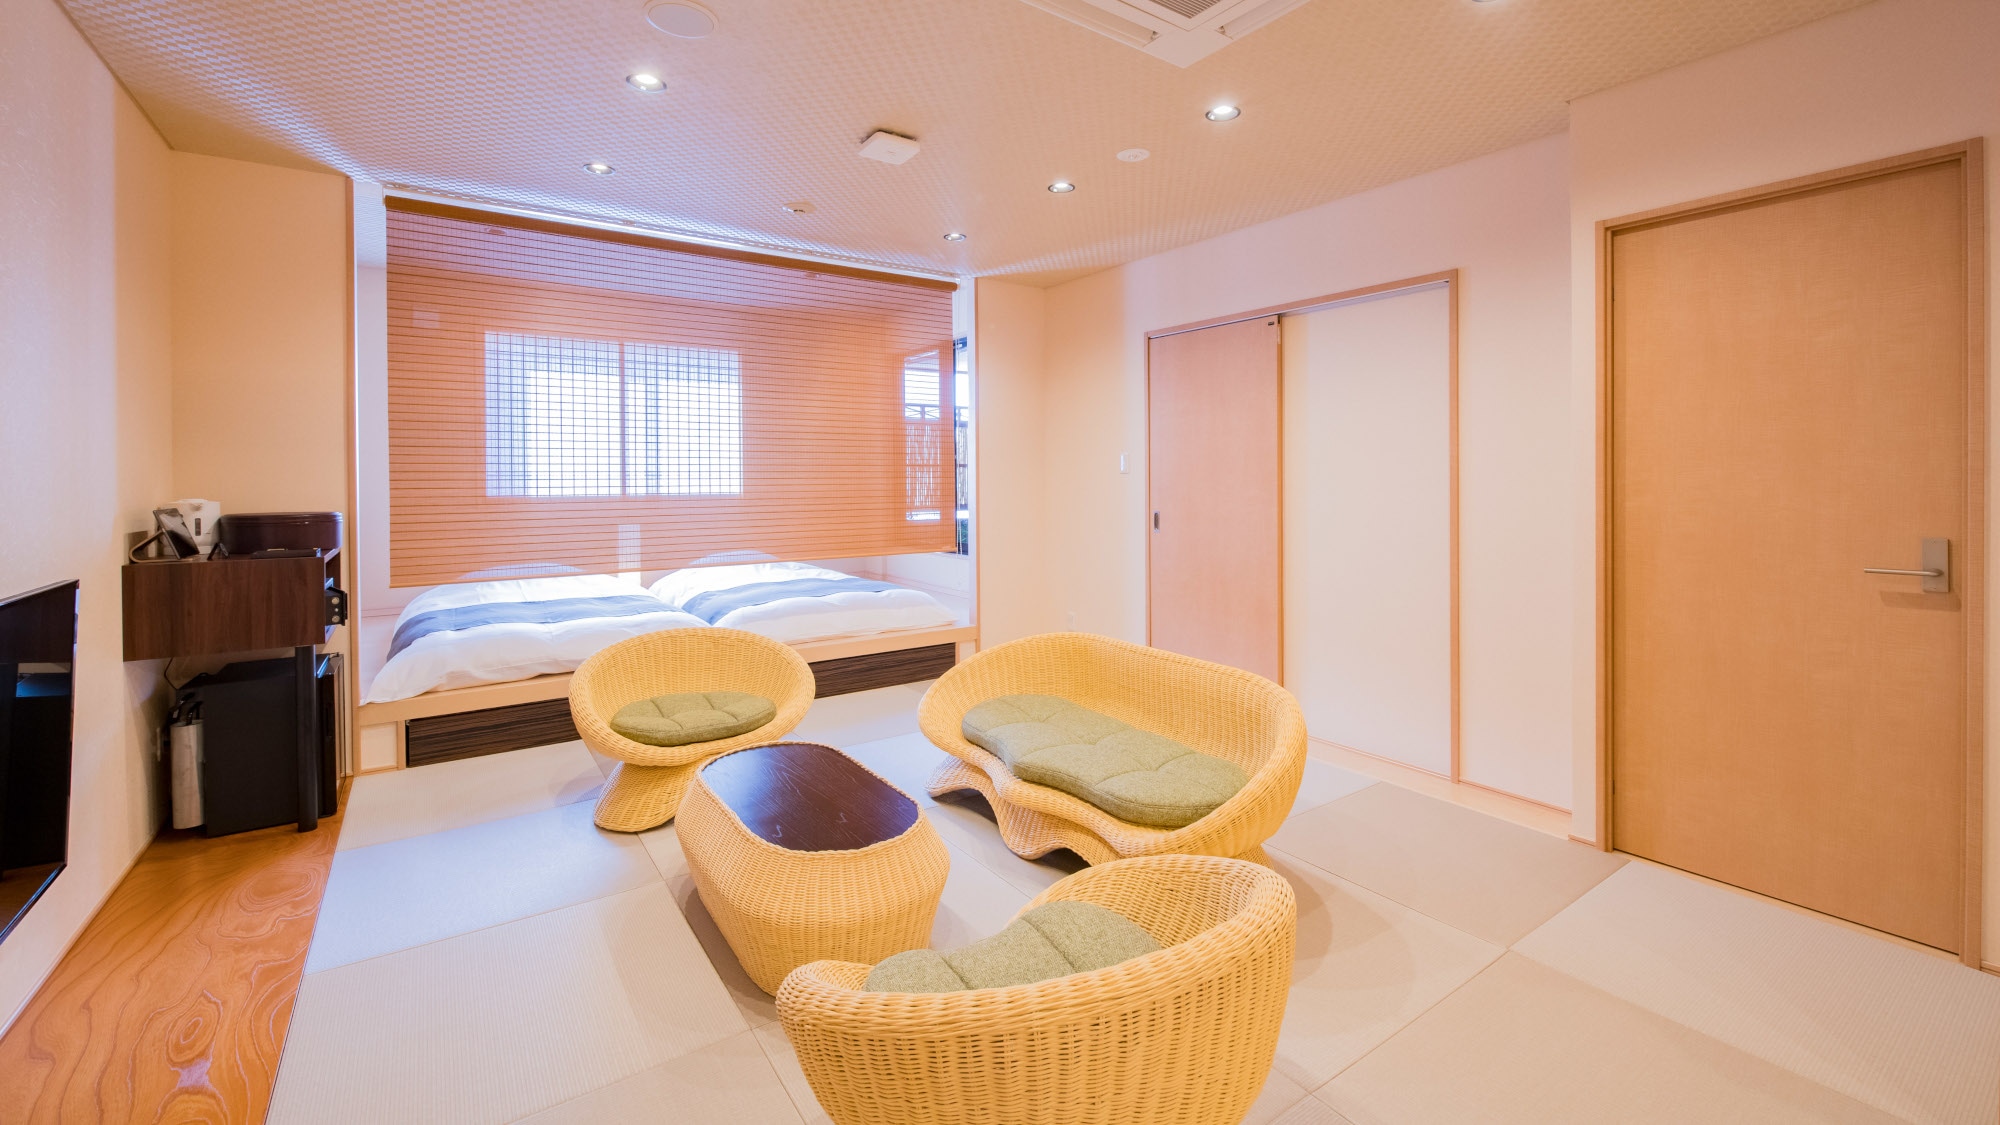 ◆ Room ◆ 55.8 square meters ◆